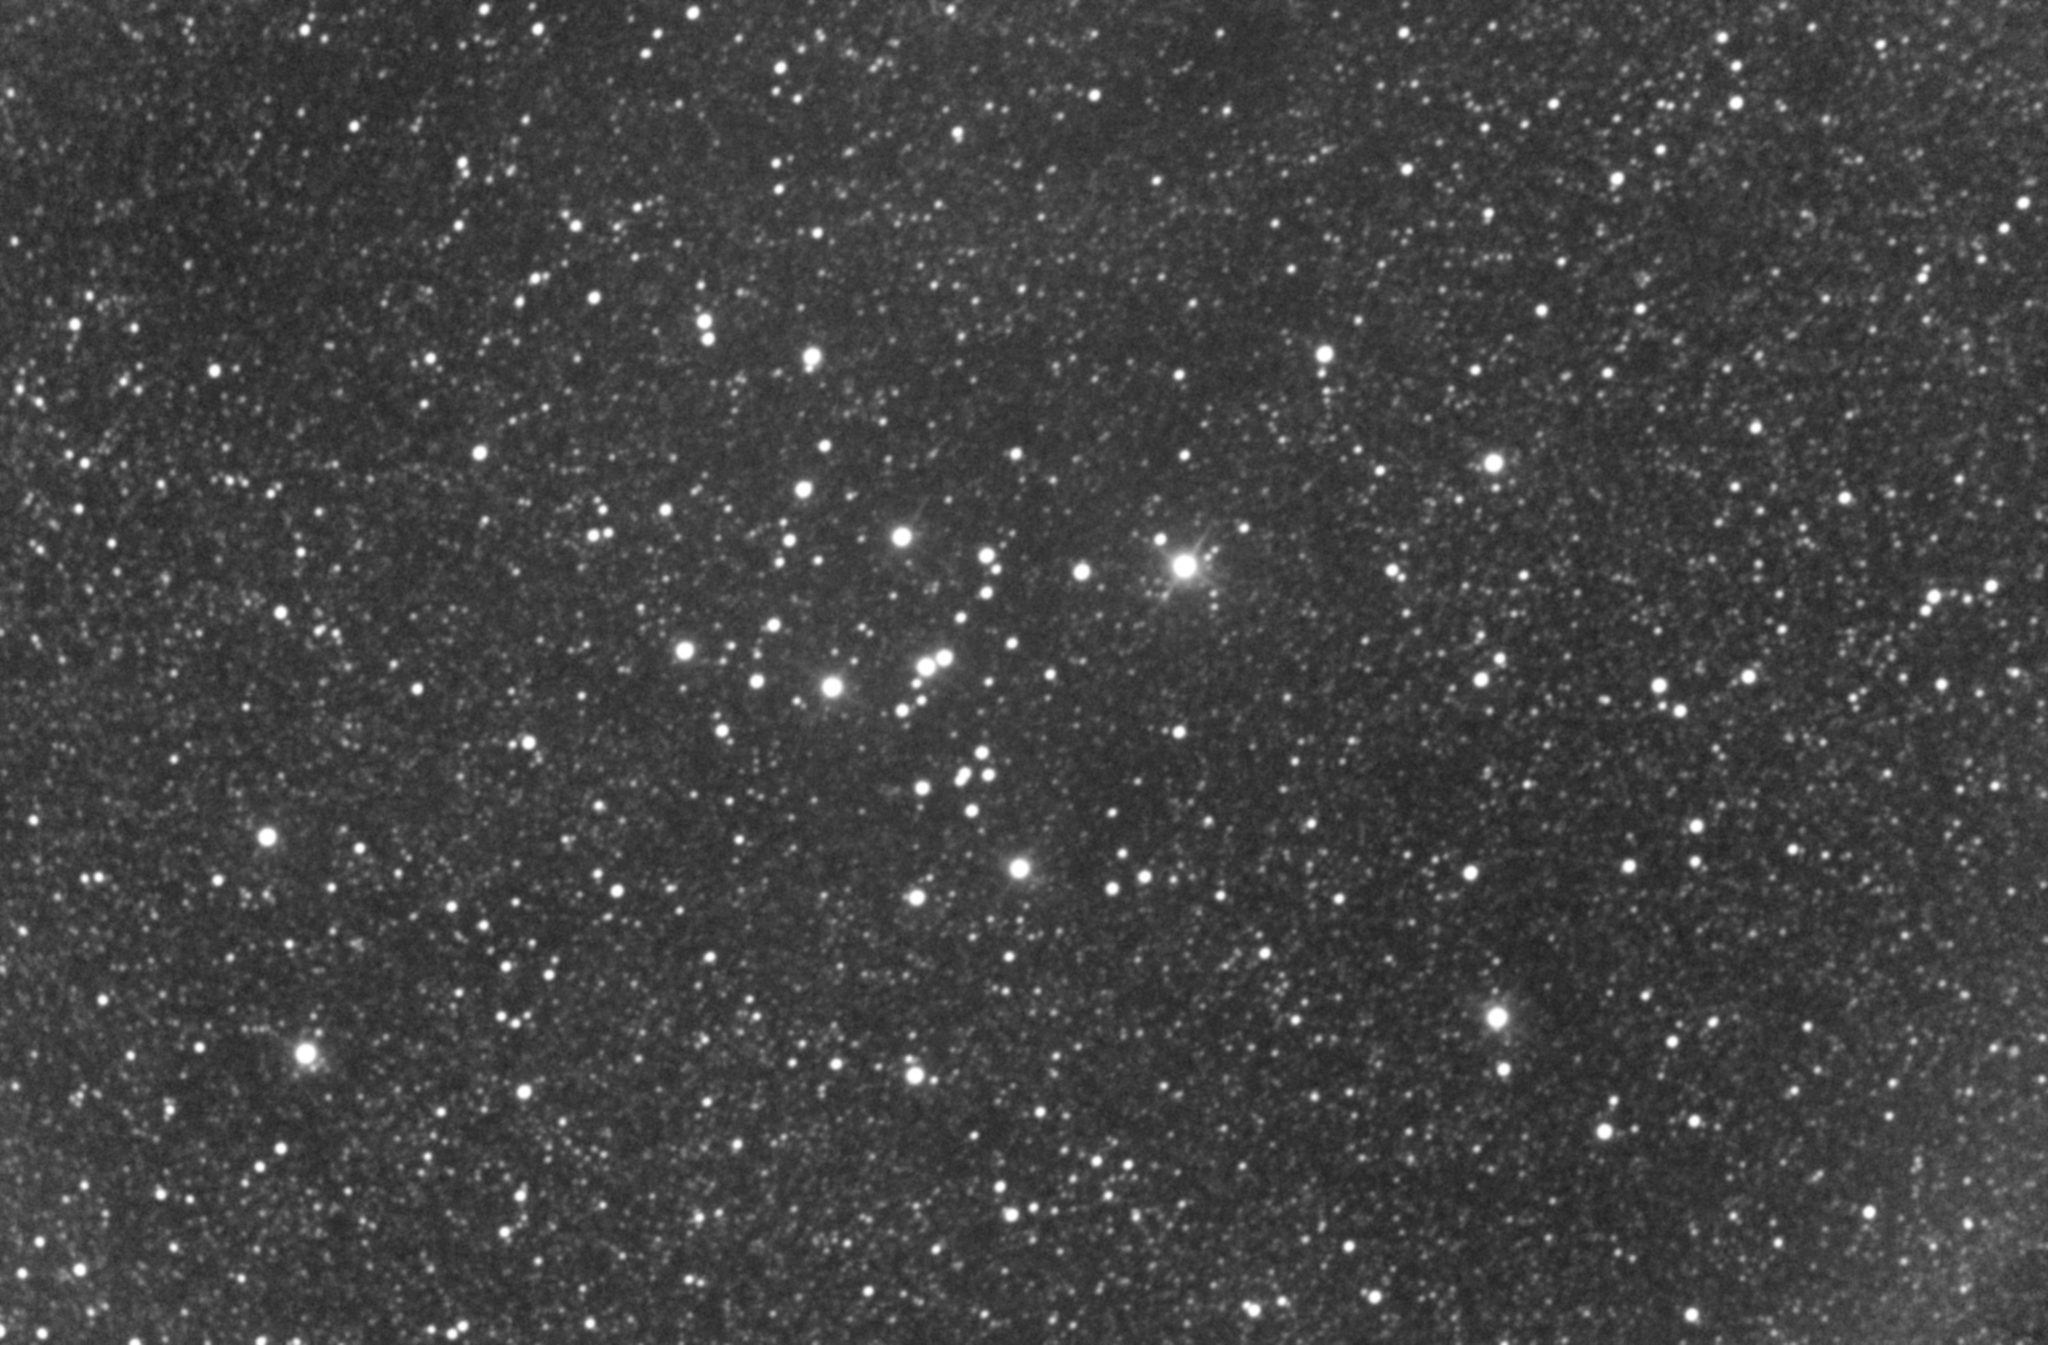 Messier 7, l'amas de Ptolémée